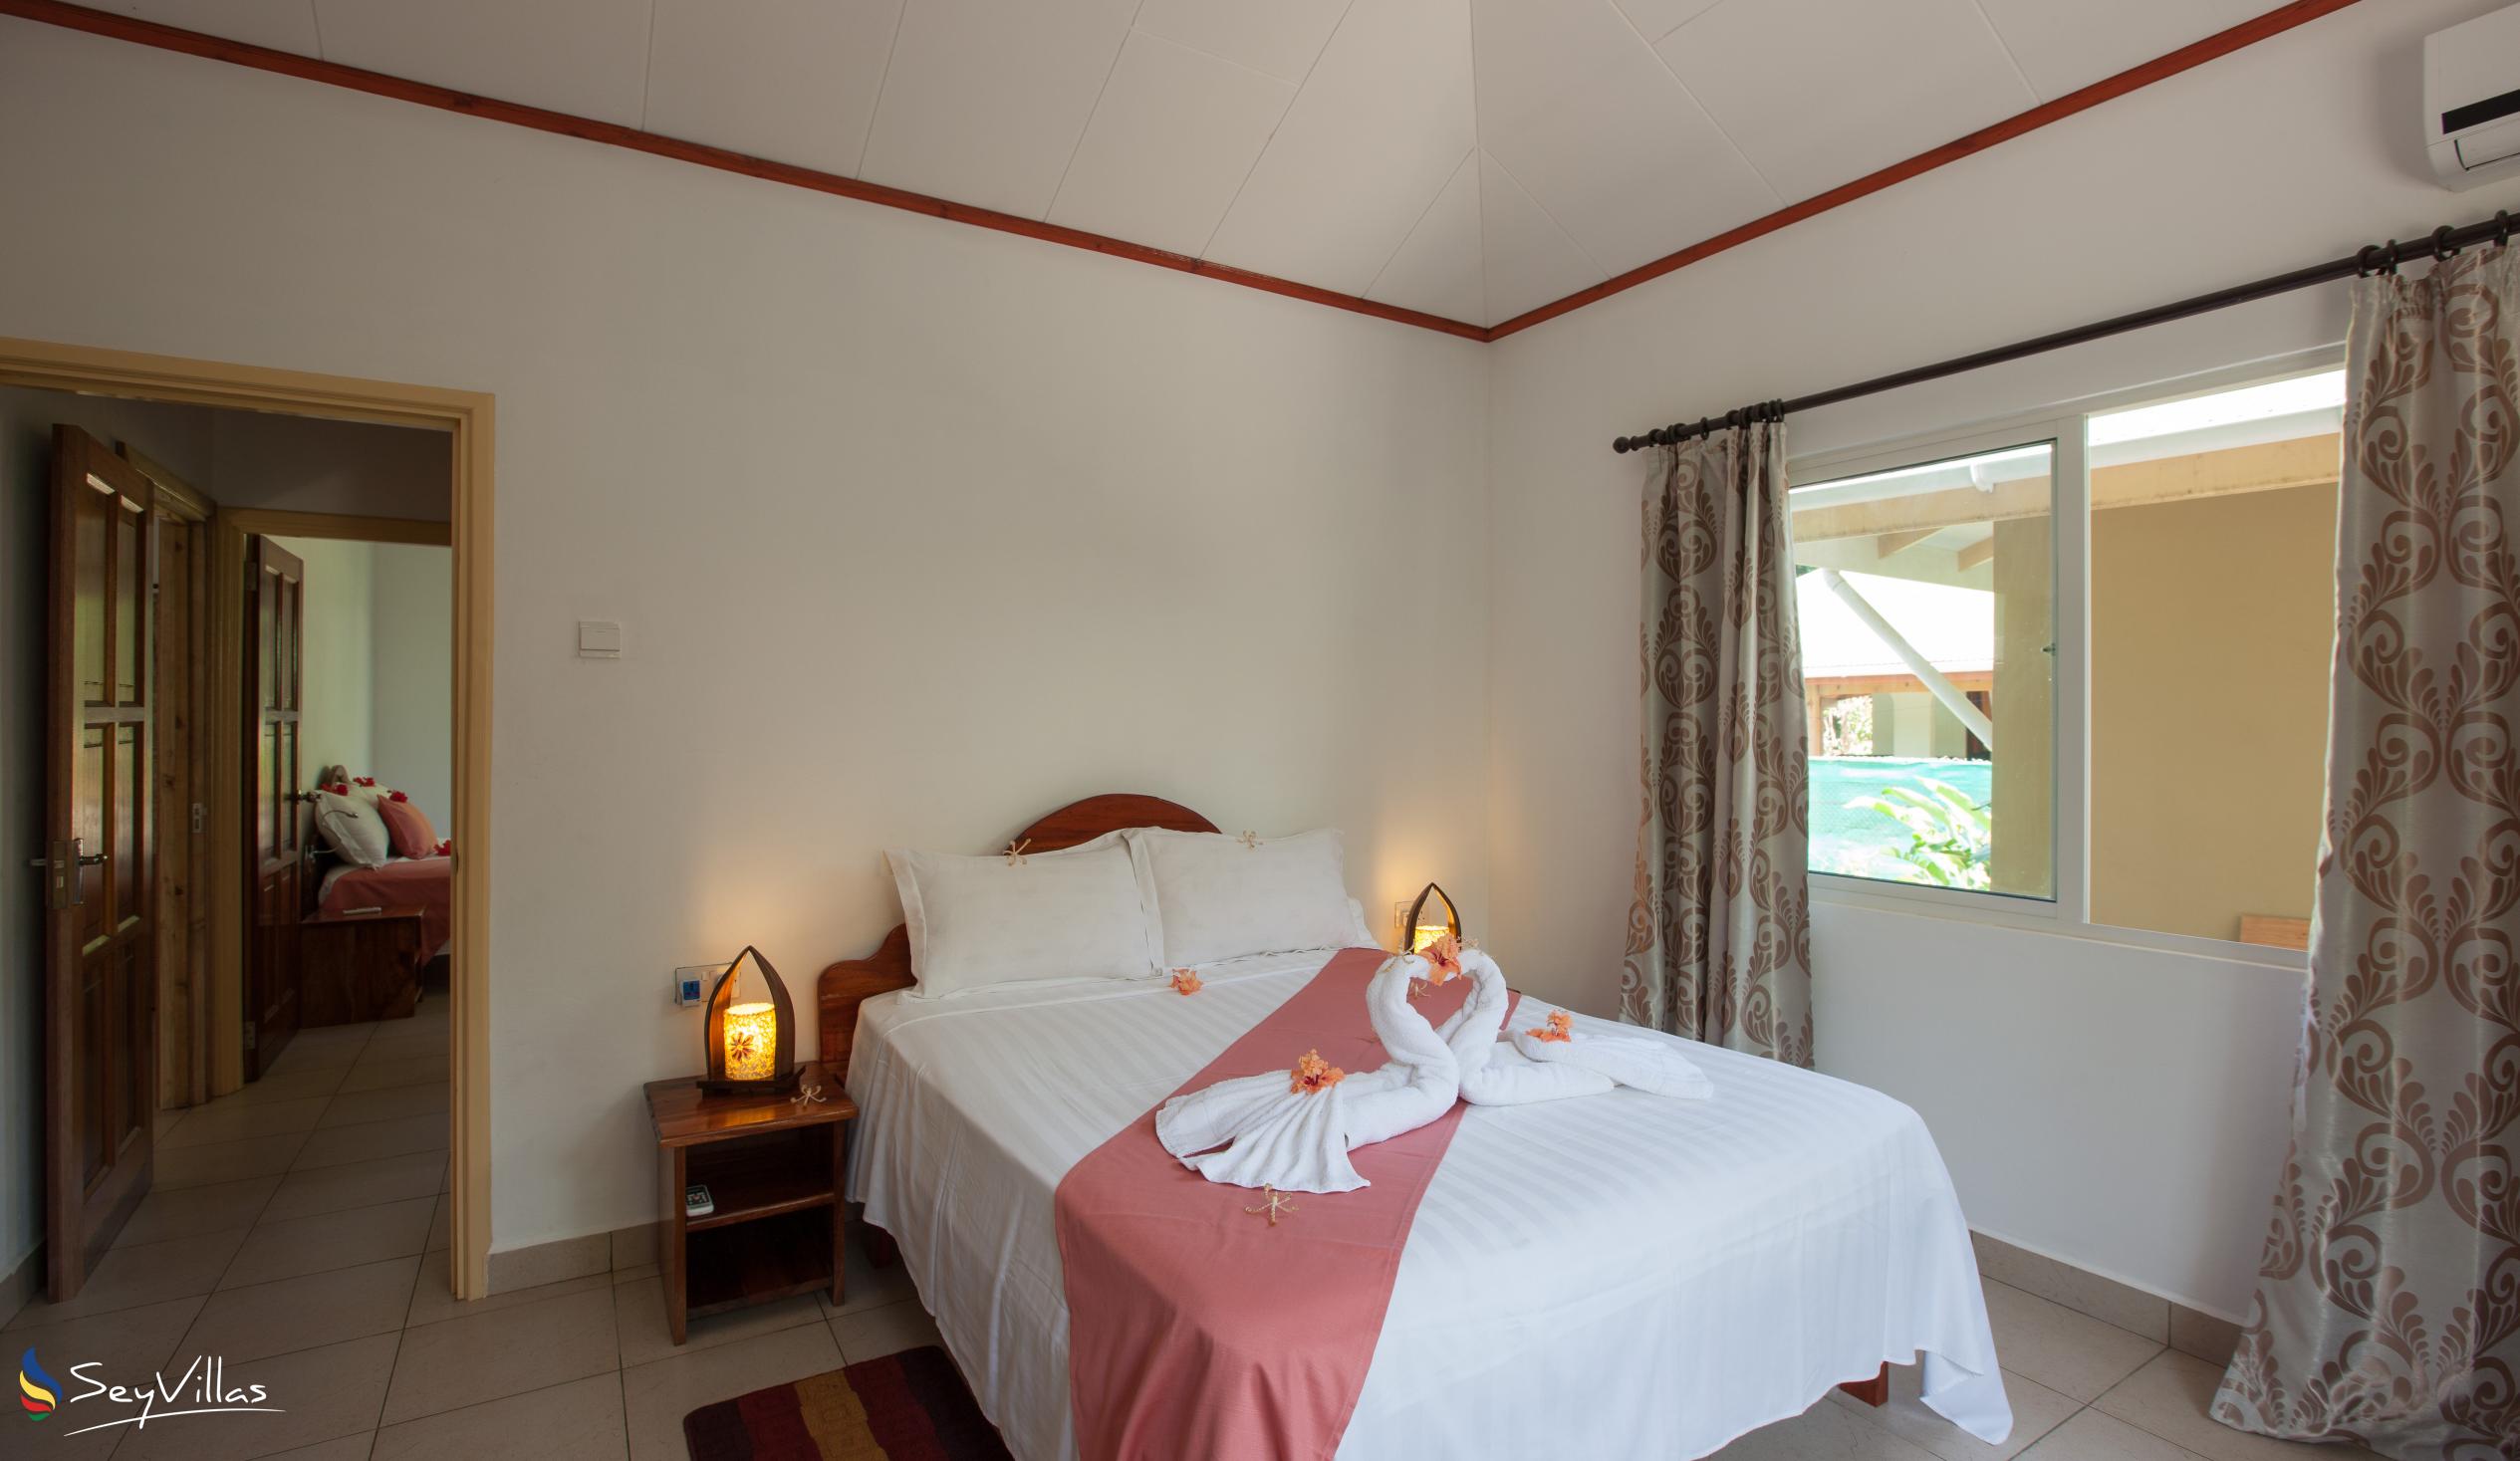 Photo 22: Hostellerie La Digue - 3-Bedroom Chalet - La Digue (Seychelles)